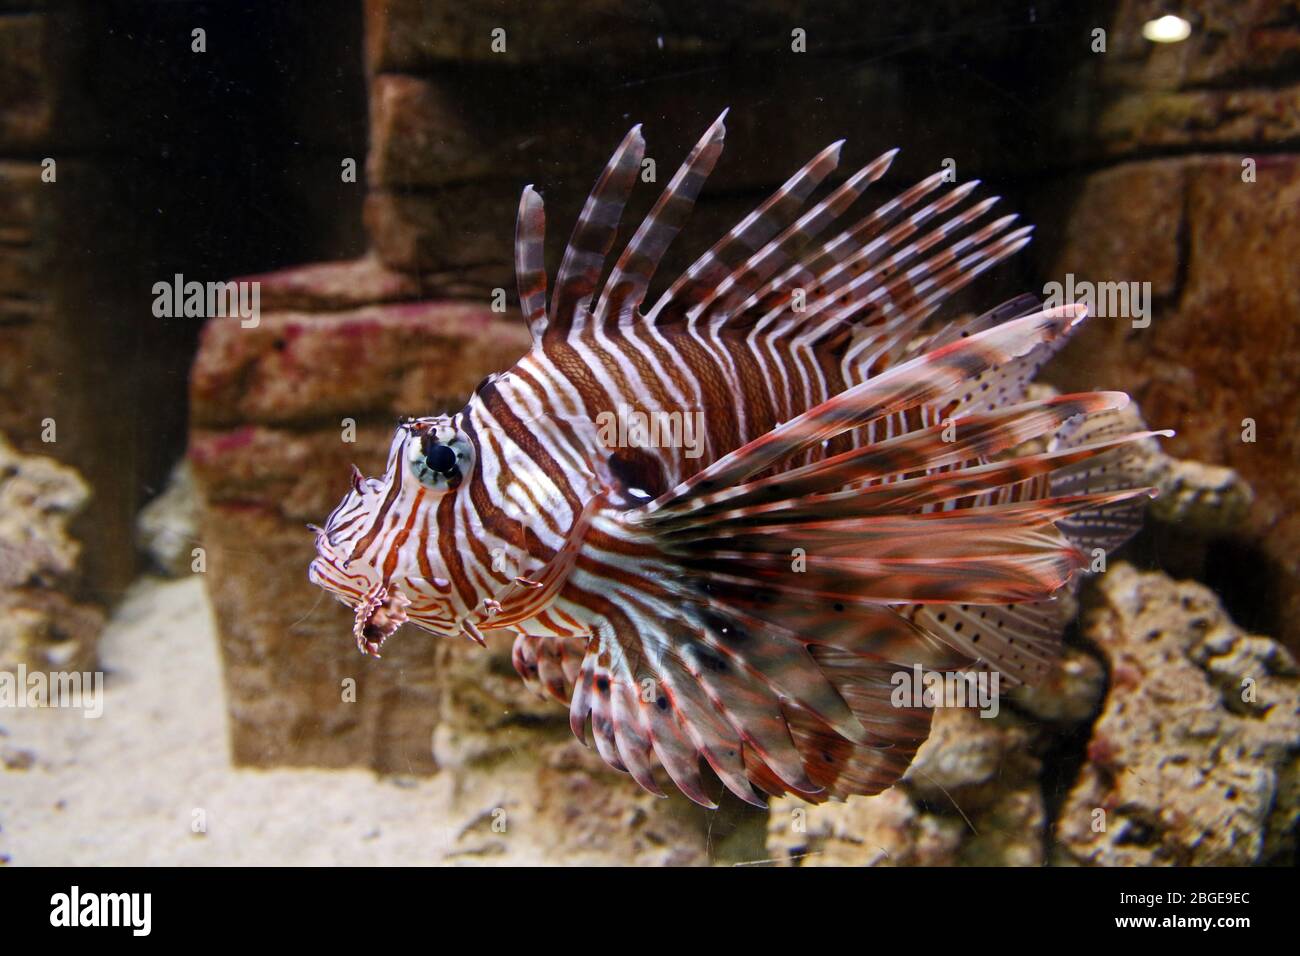 Lionfish (Pterois) - animal captif dans l'aquarium. Bon à manger, mais les épines sont venimeuses. Aka TurkeyFish. Morue papillon. Ailettes en plumes. Banque D'Images